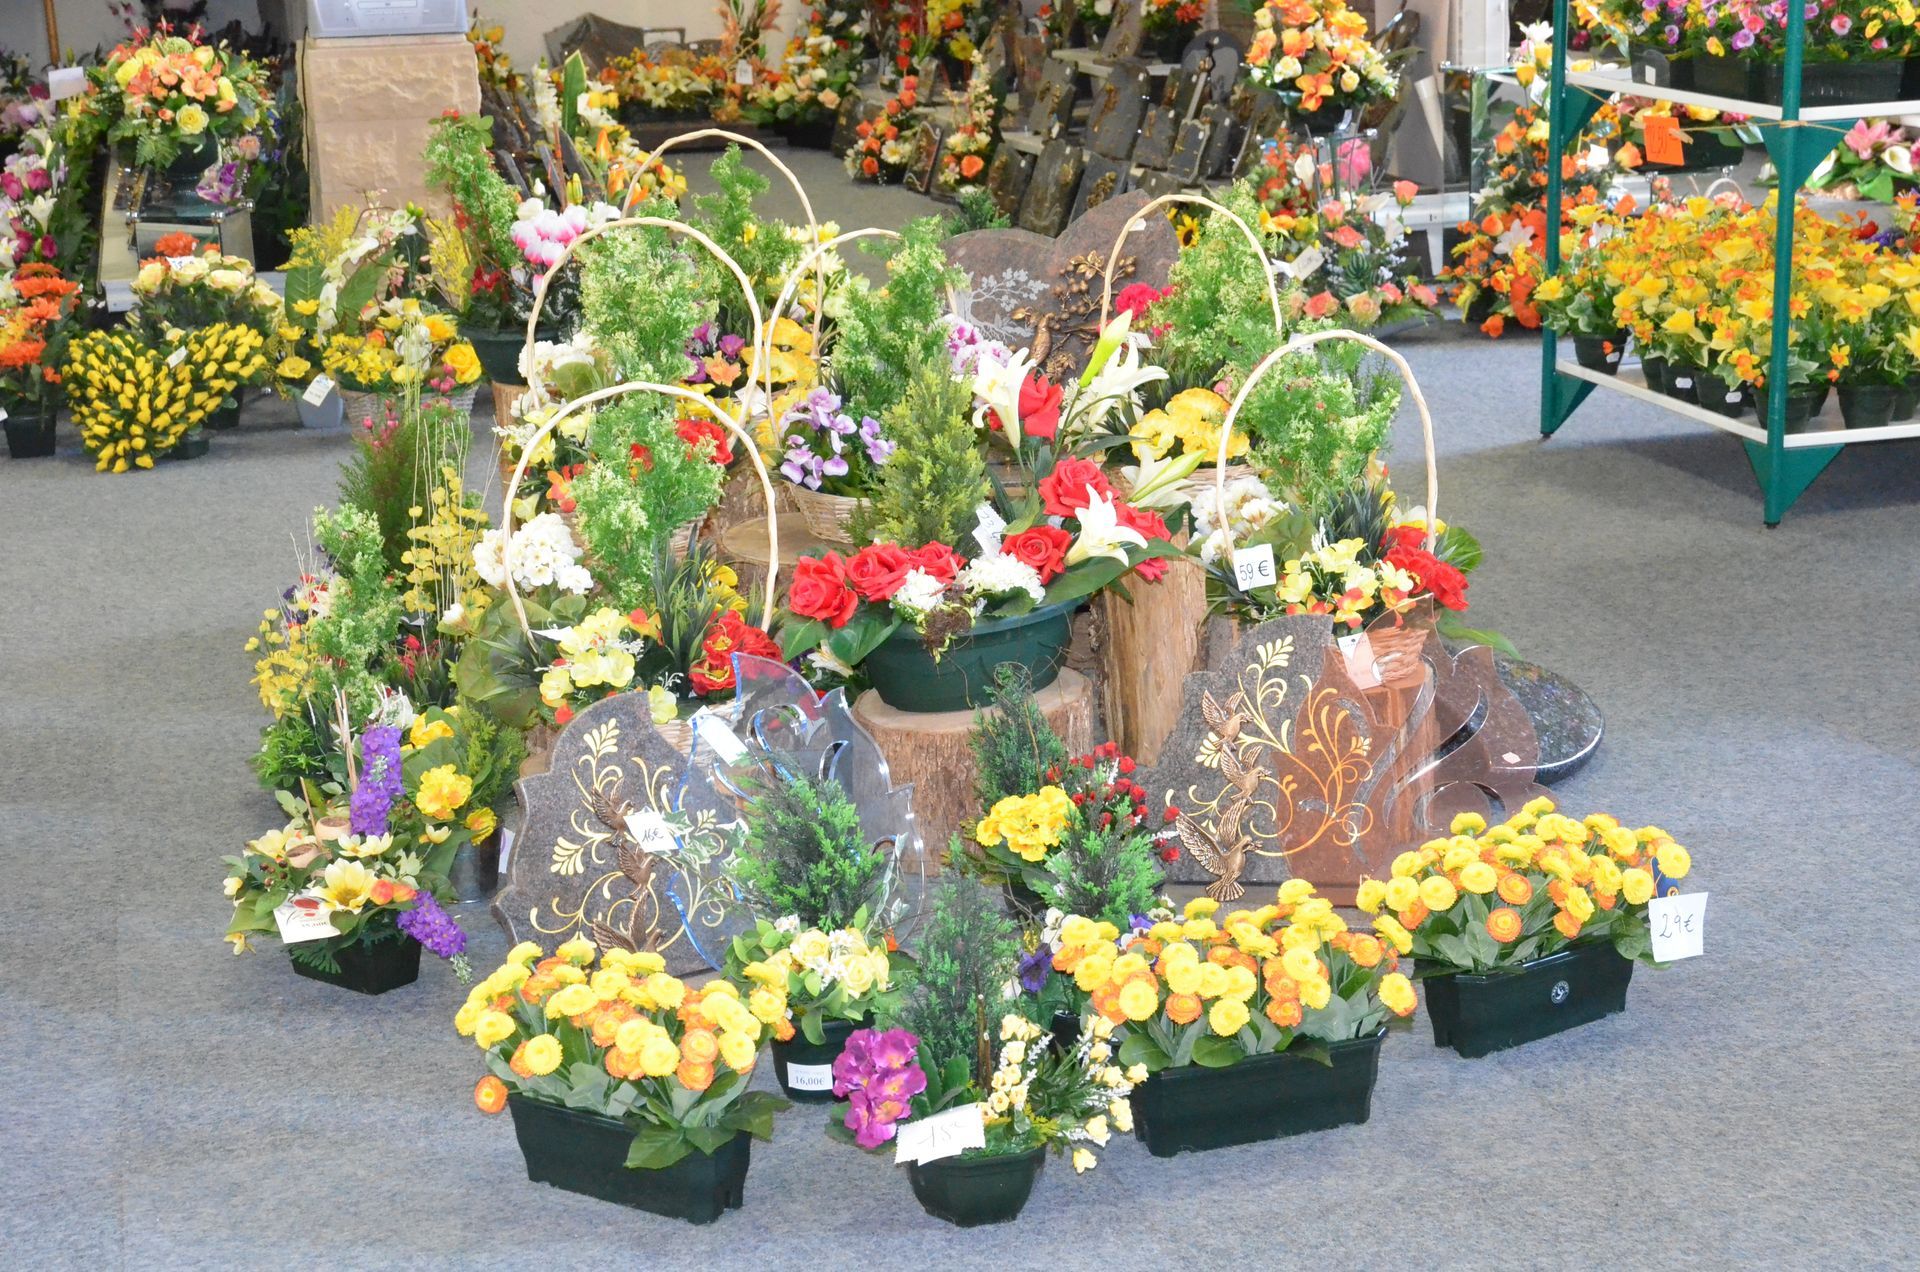 Fleurs et plaques funéraires exposées dans un magasin